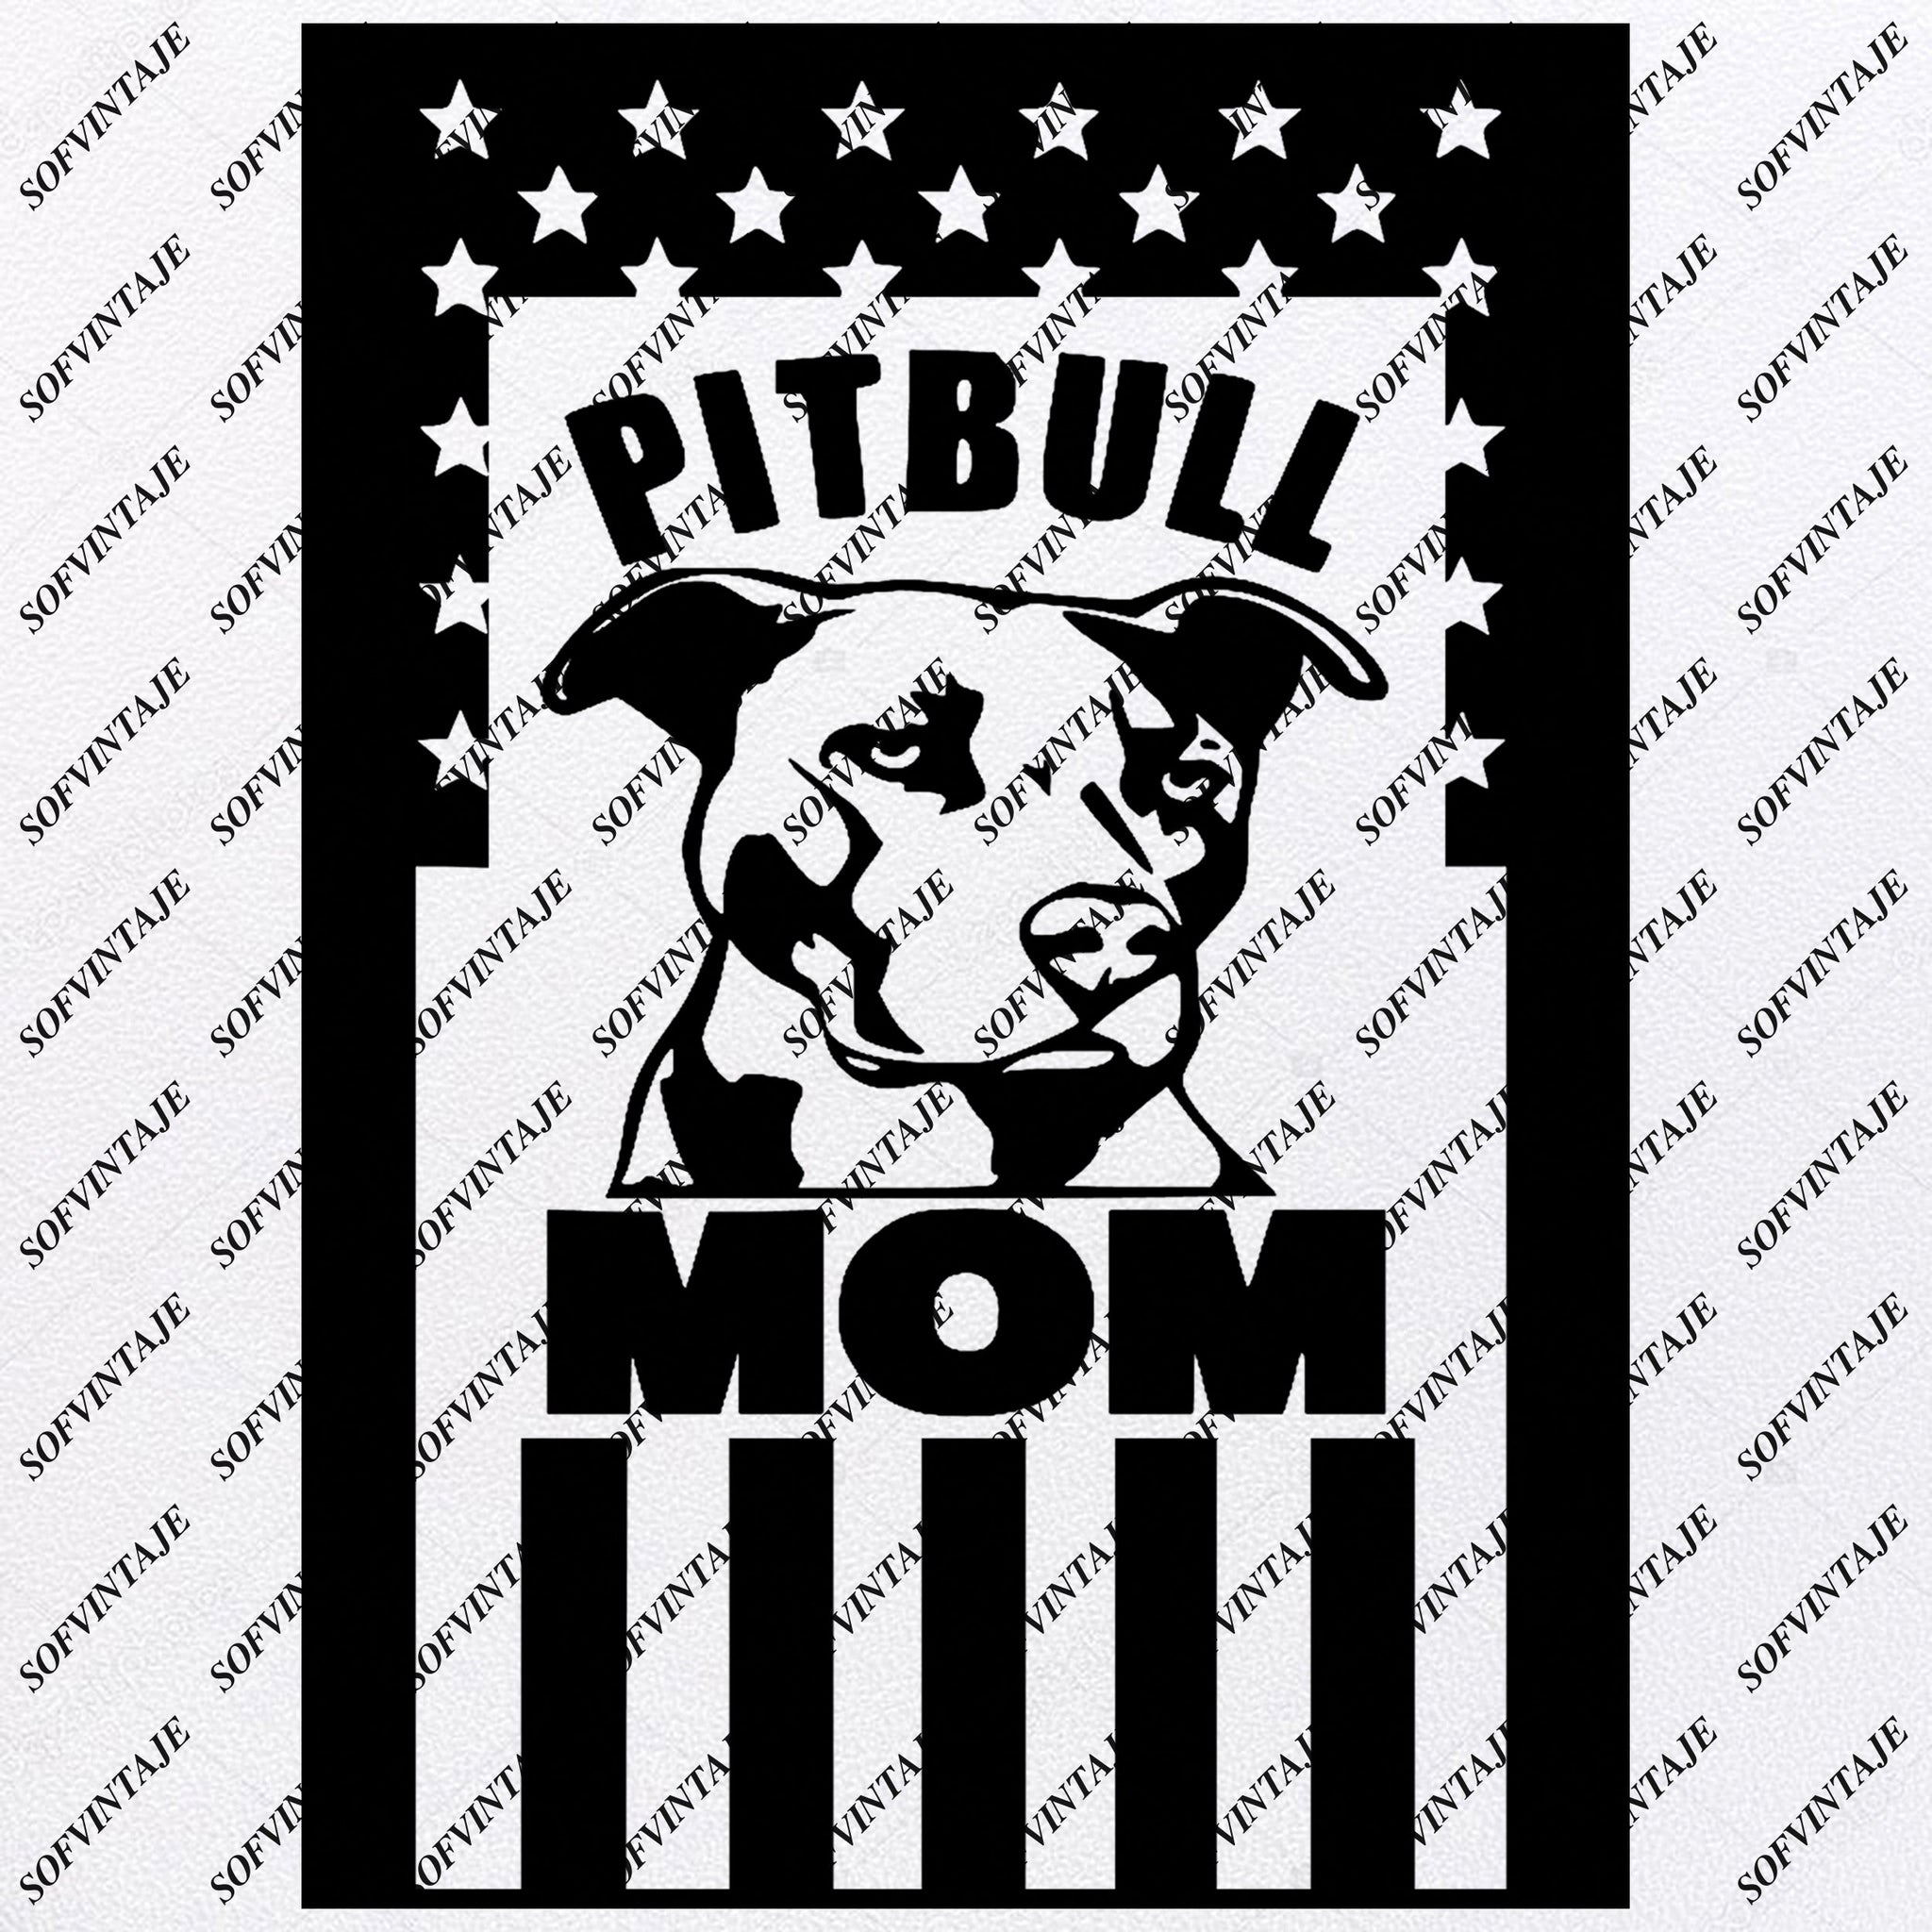 Download Pitbull Pitbull Mom Pitbull Dad Svg File Pitbull Svg Original Desi Sofvintaje